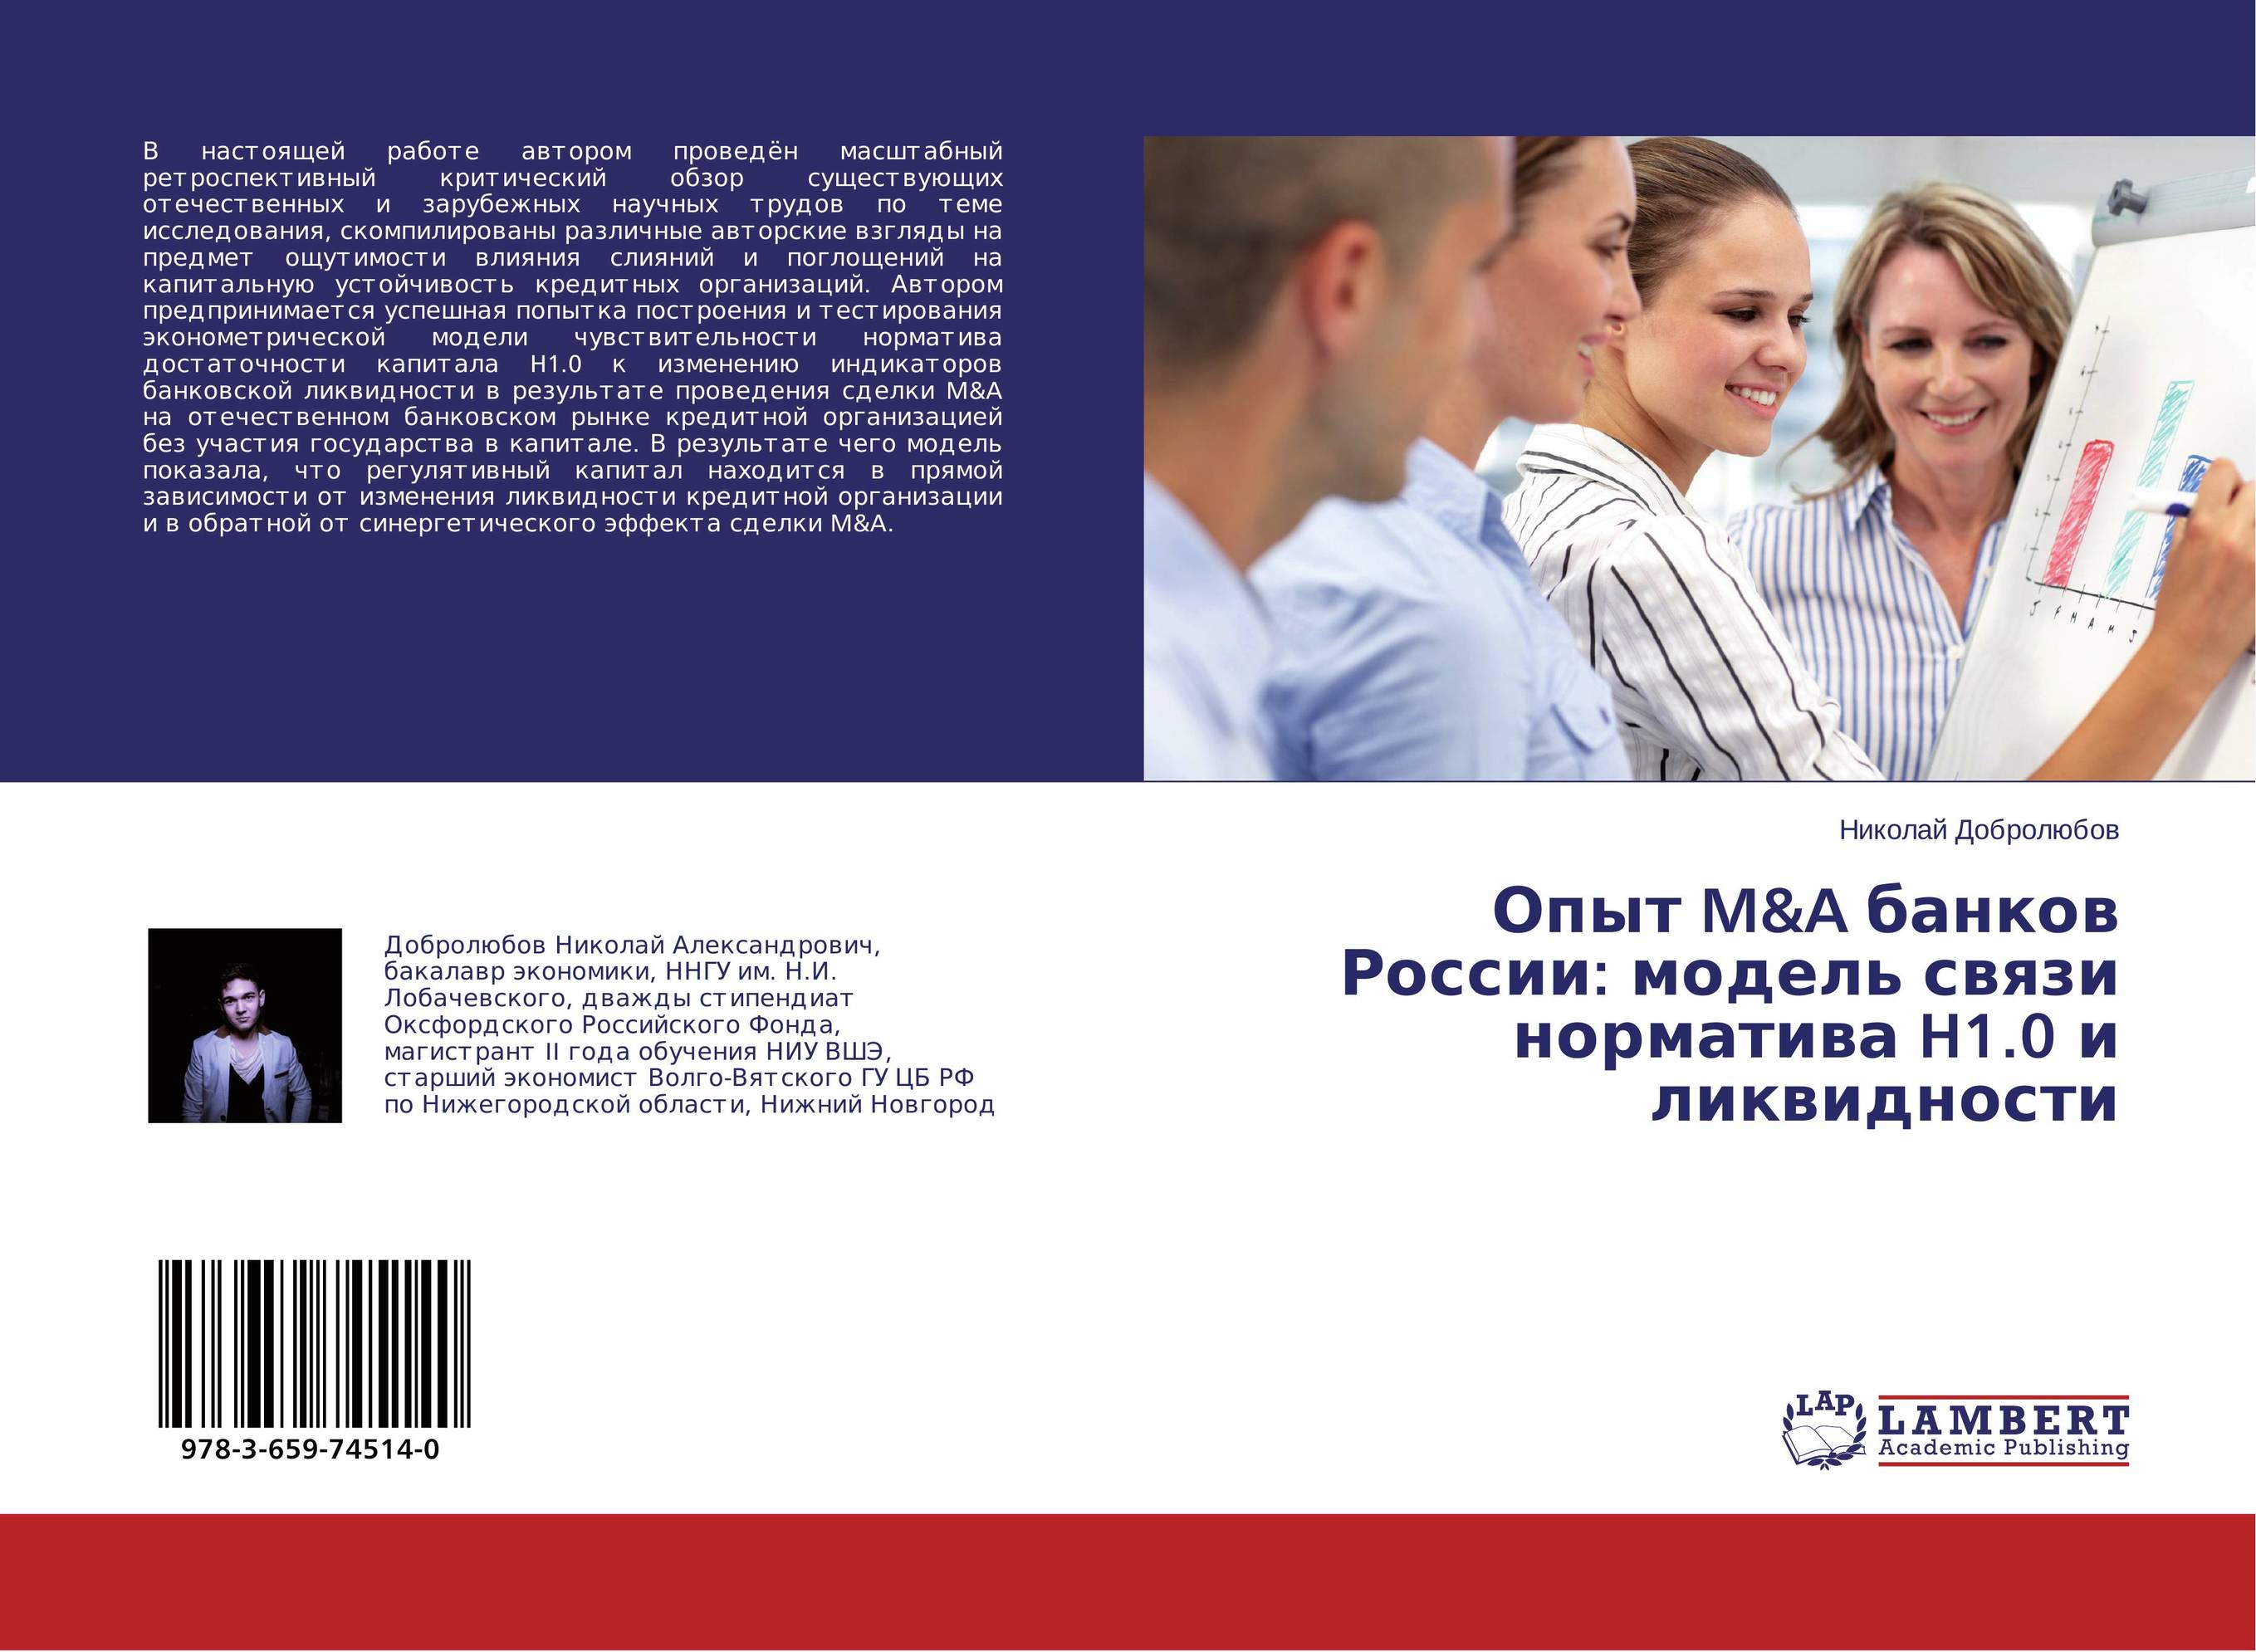 
        Опыт M&amp;A банков России: модель связи норматива H1.0 и ликвидности..
      